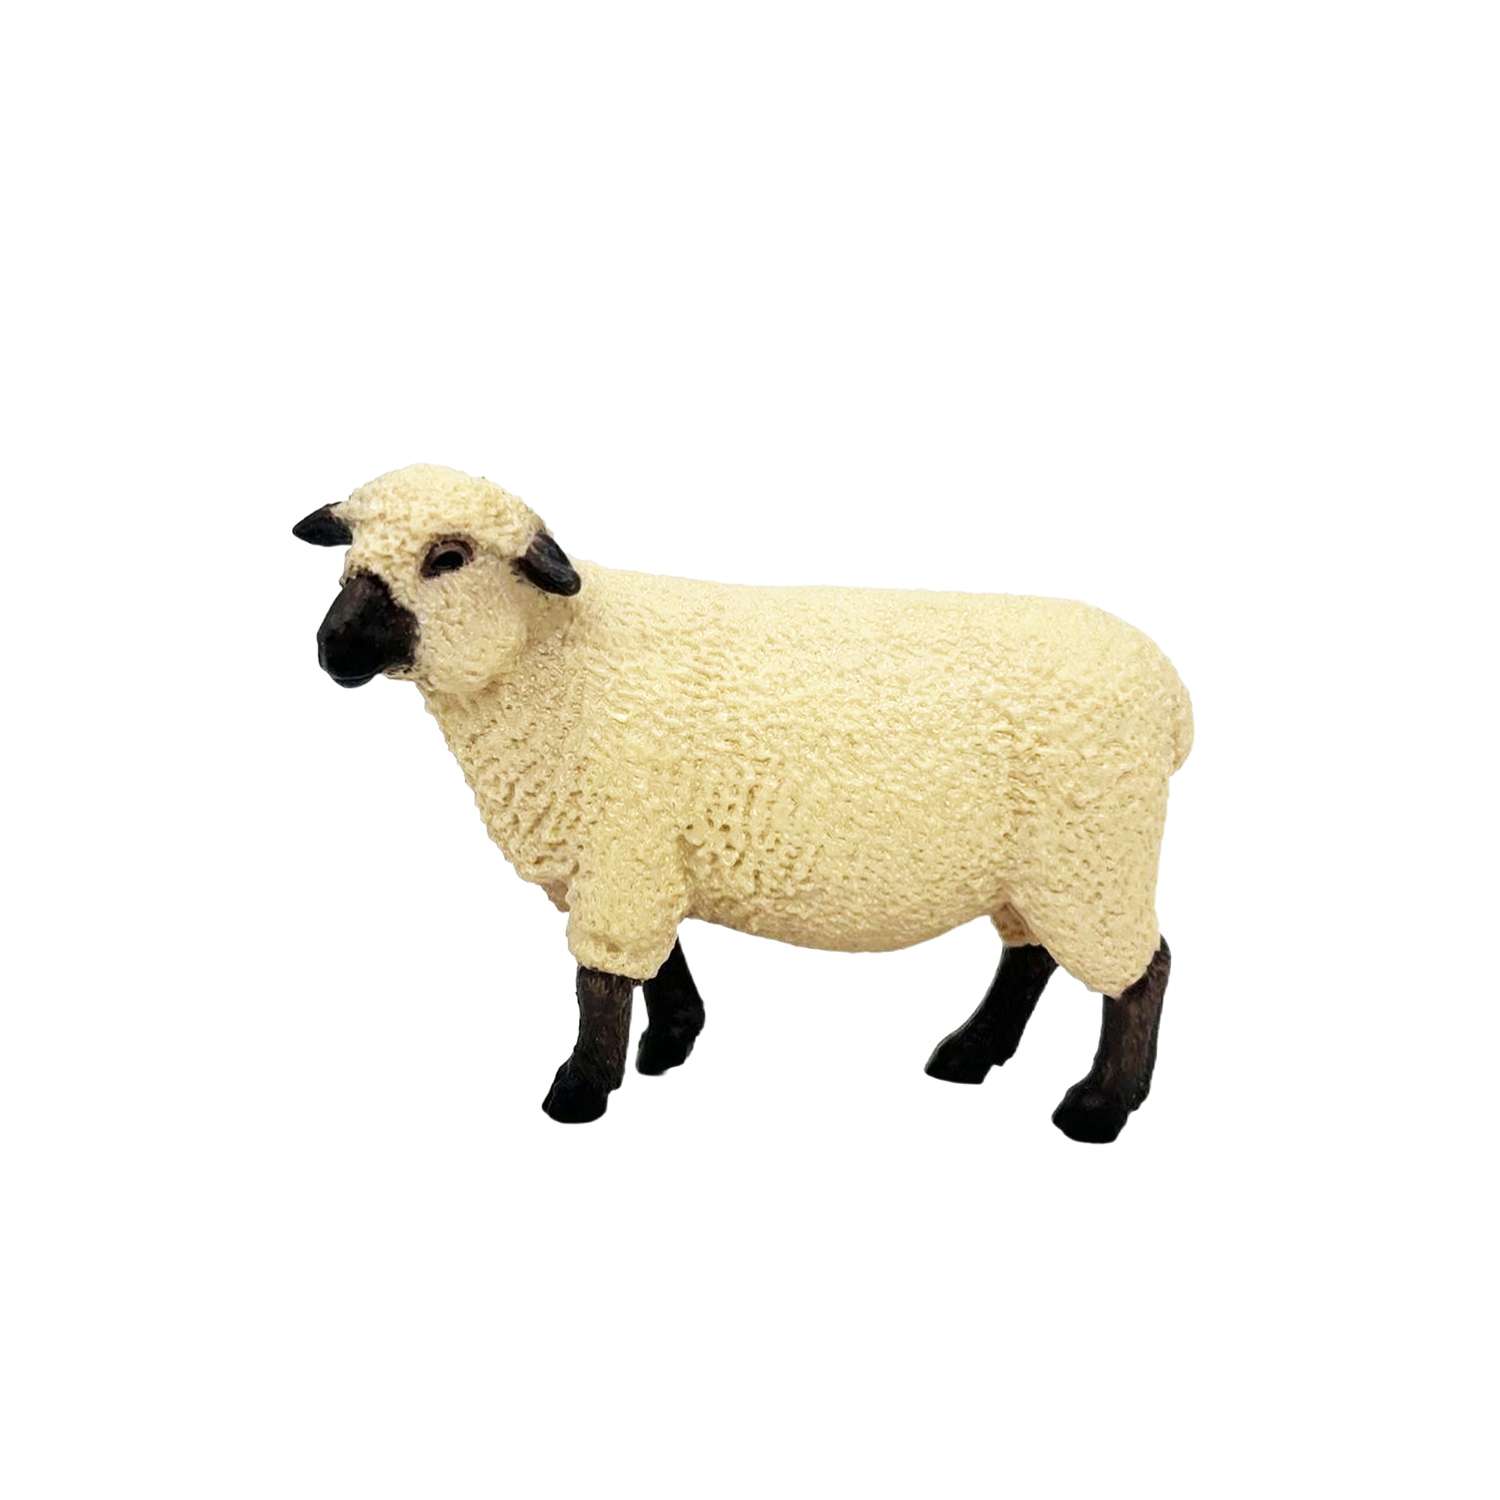 Фигурка животного Детское Время Овца породы Шропшир - фото 1